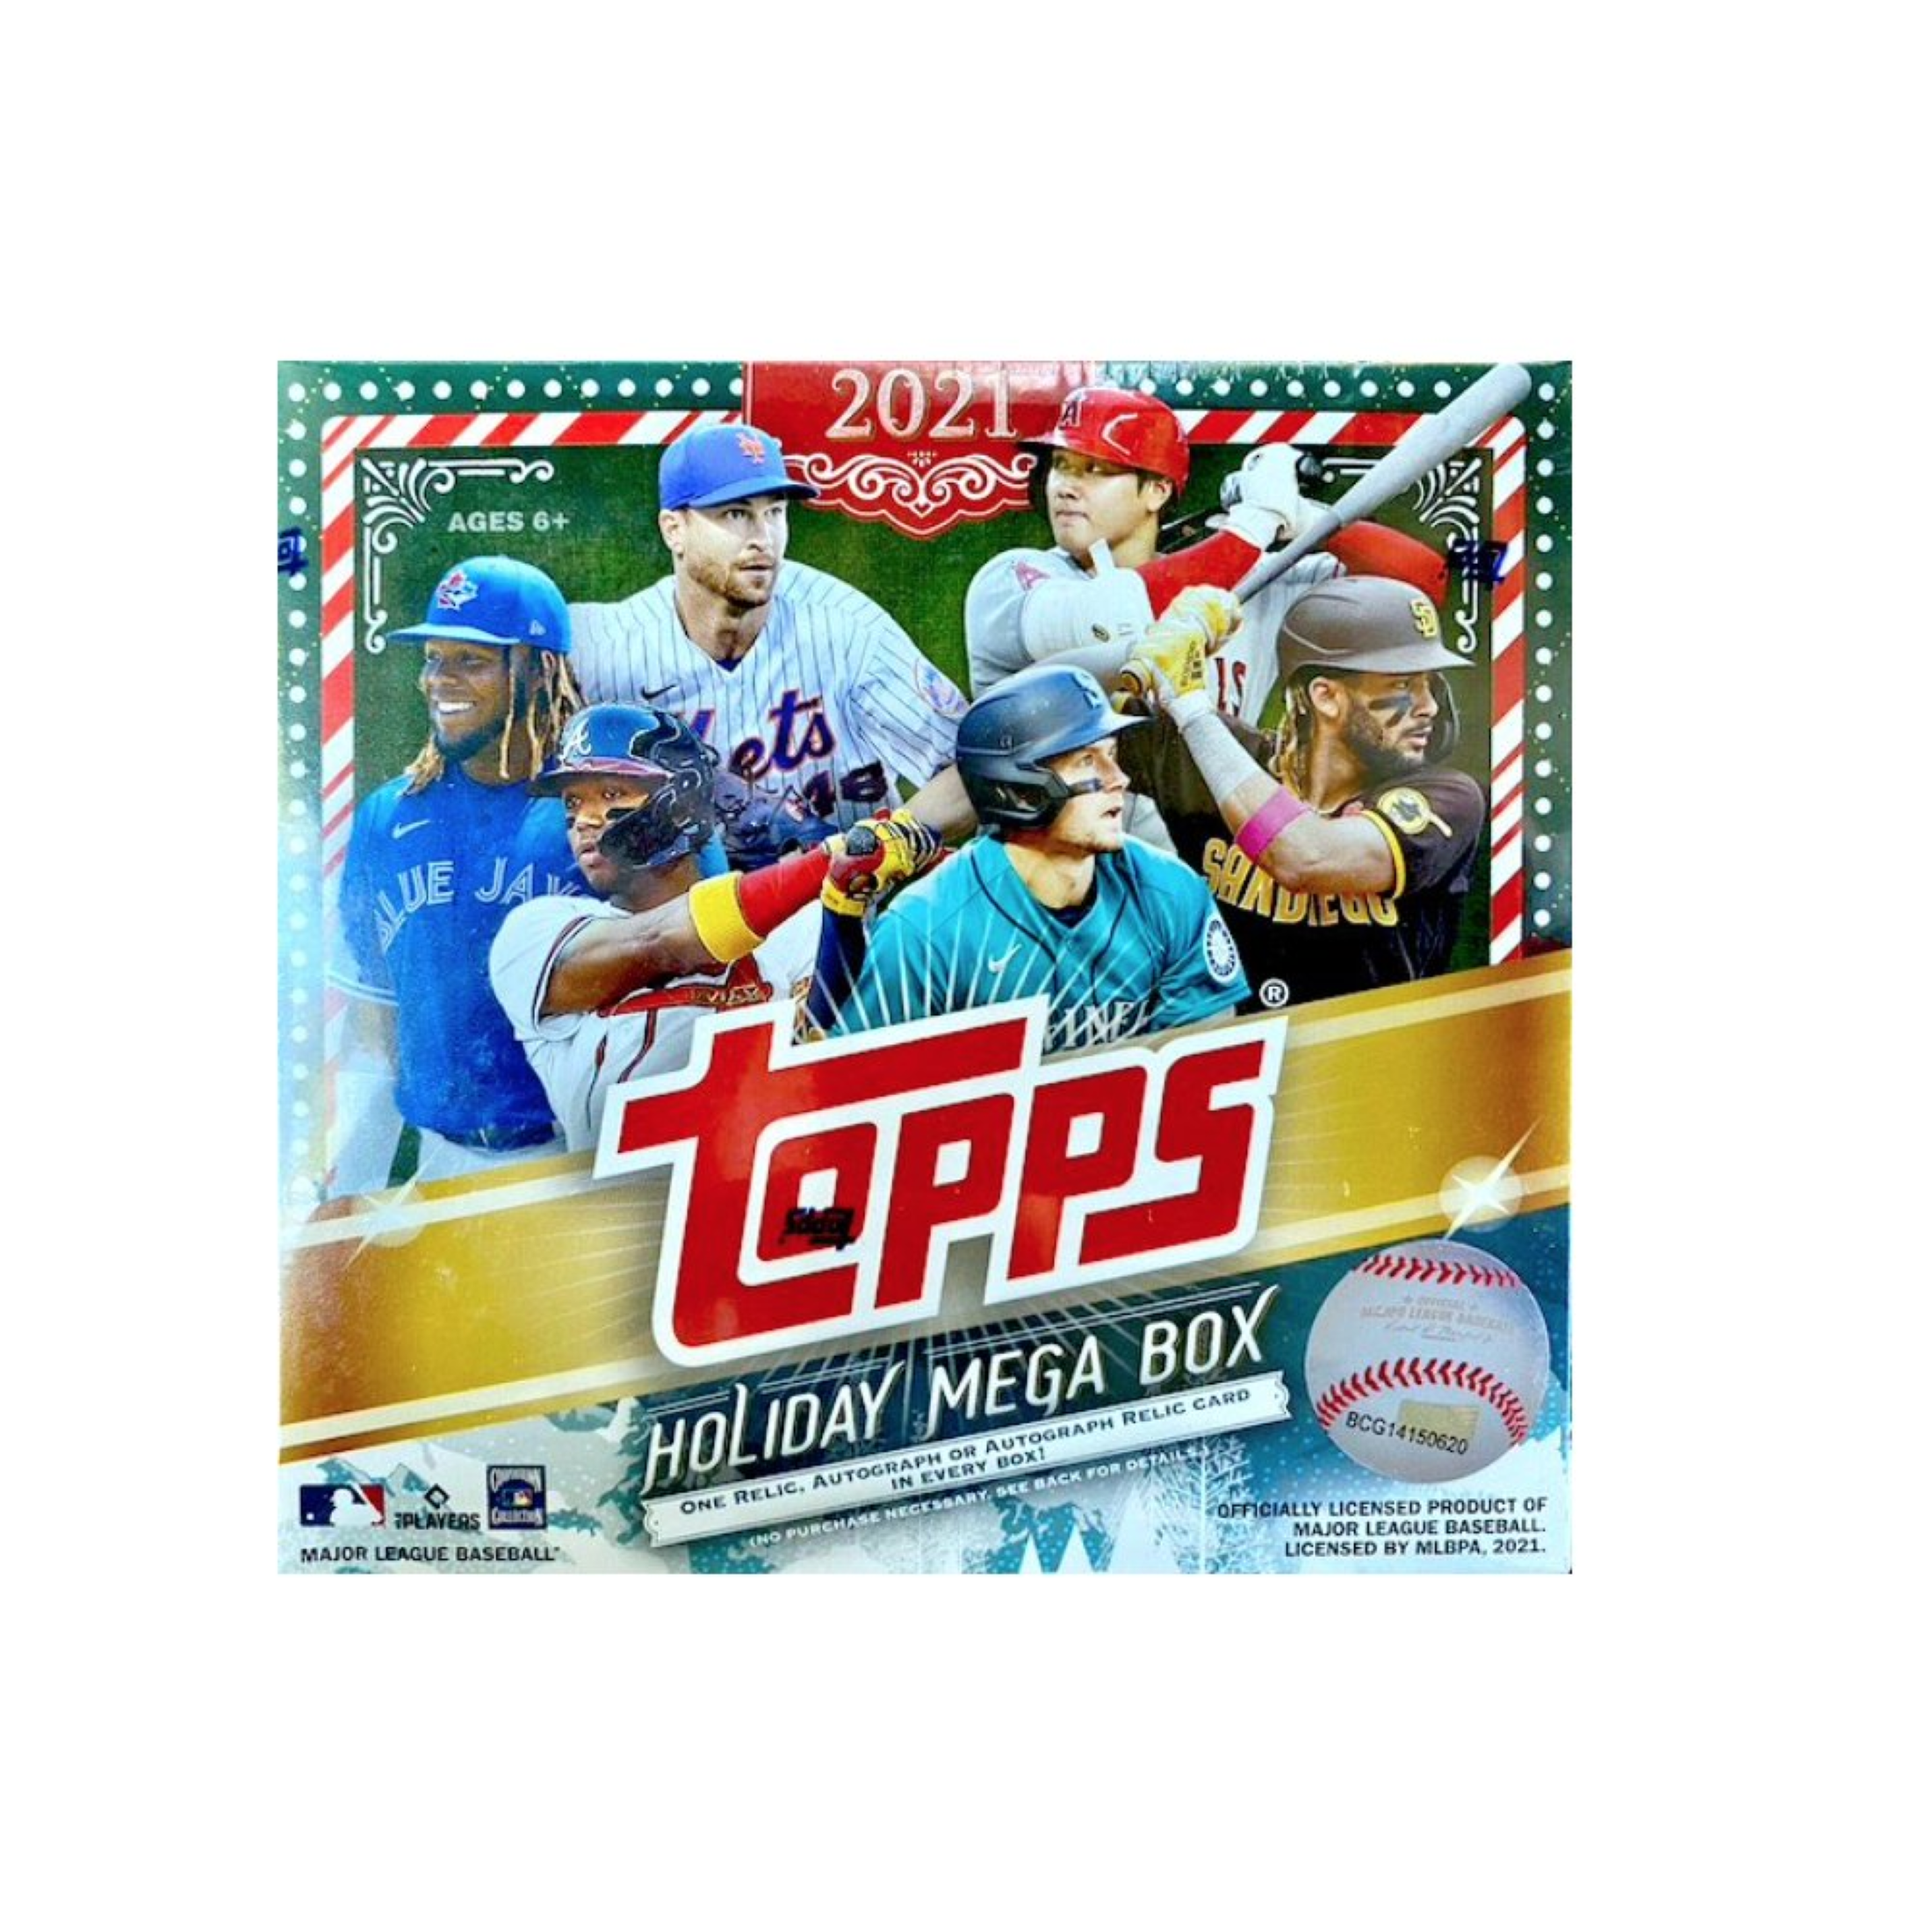 21 Topps Cards: Holiday Baseball Mega Box - image 1 of 2